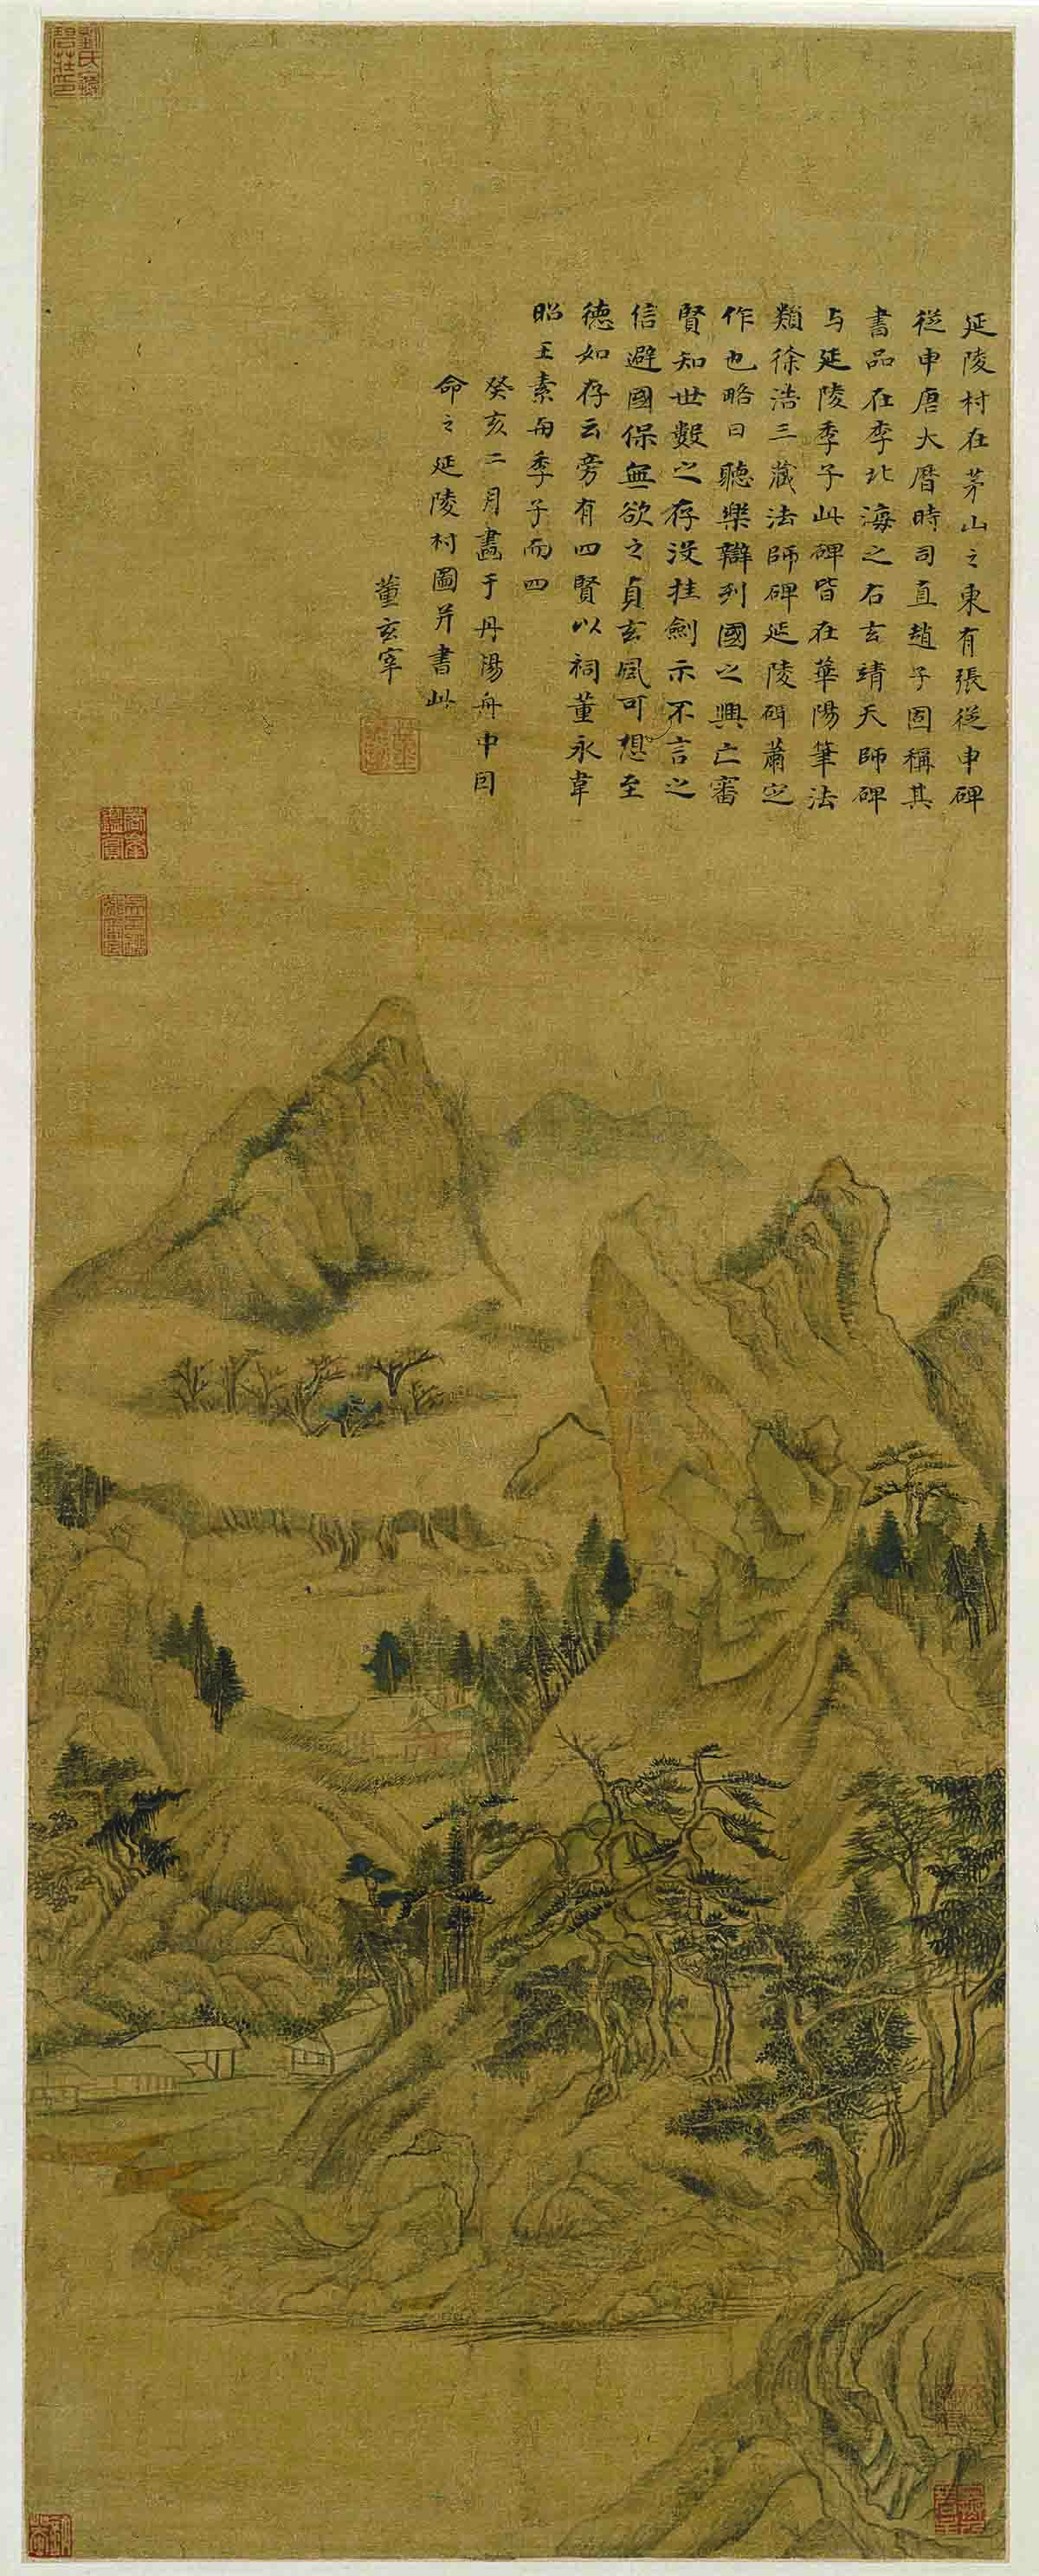 明 董其昌 延陵村图轴绢本78.5x30.2北京